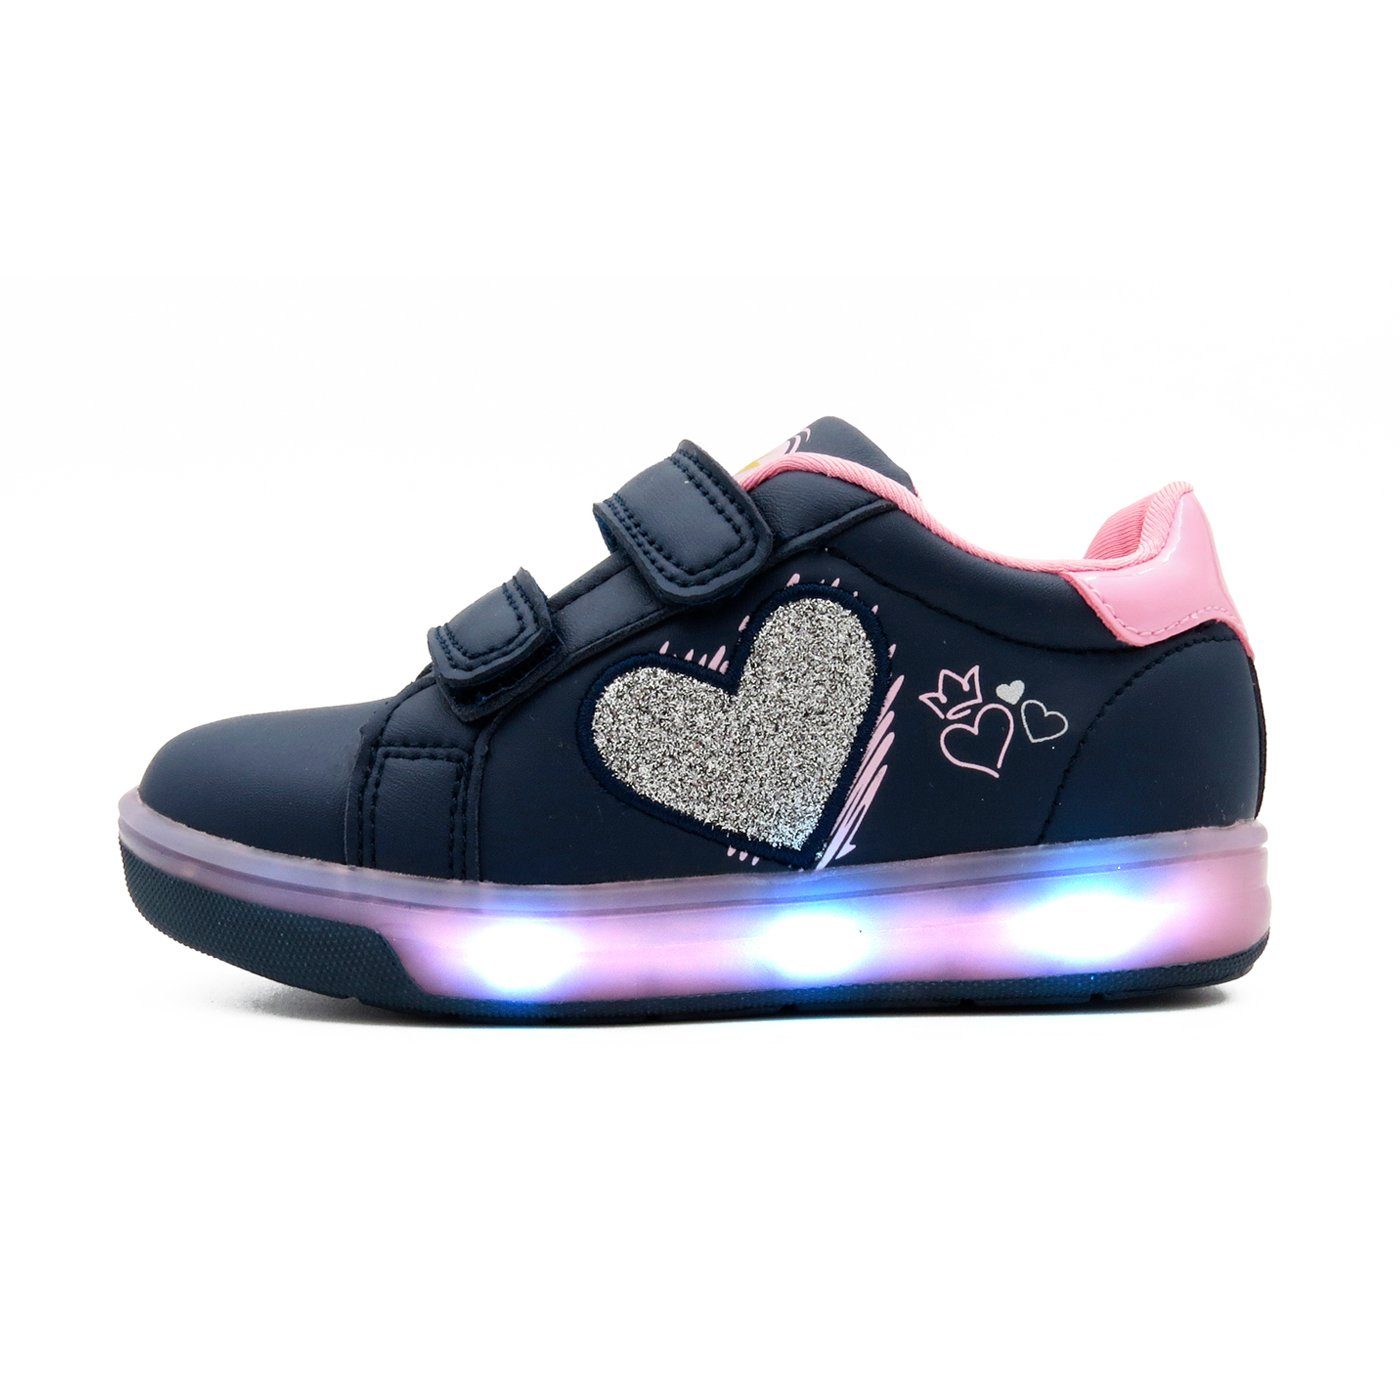 Atumgsaktiv Breezy Schuhe Klettverschluss mit 2196111 LED LIGHT BREEZY Material, Leuchtsohle, atmungsaktive Sneaker Sneaker Leuchtsohle LED